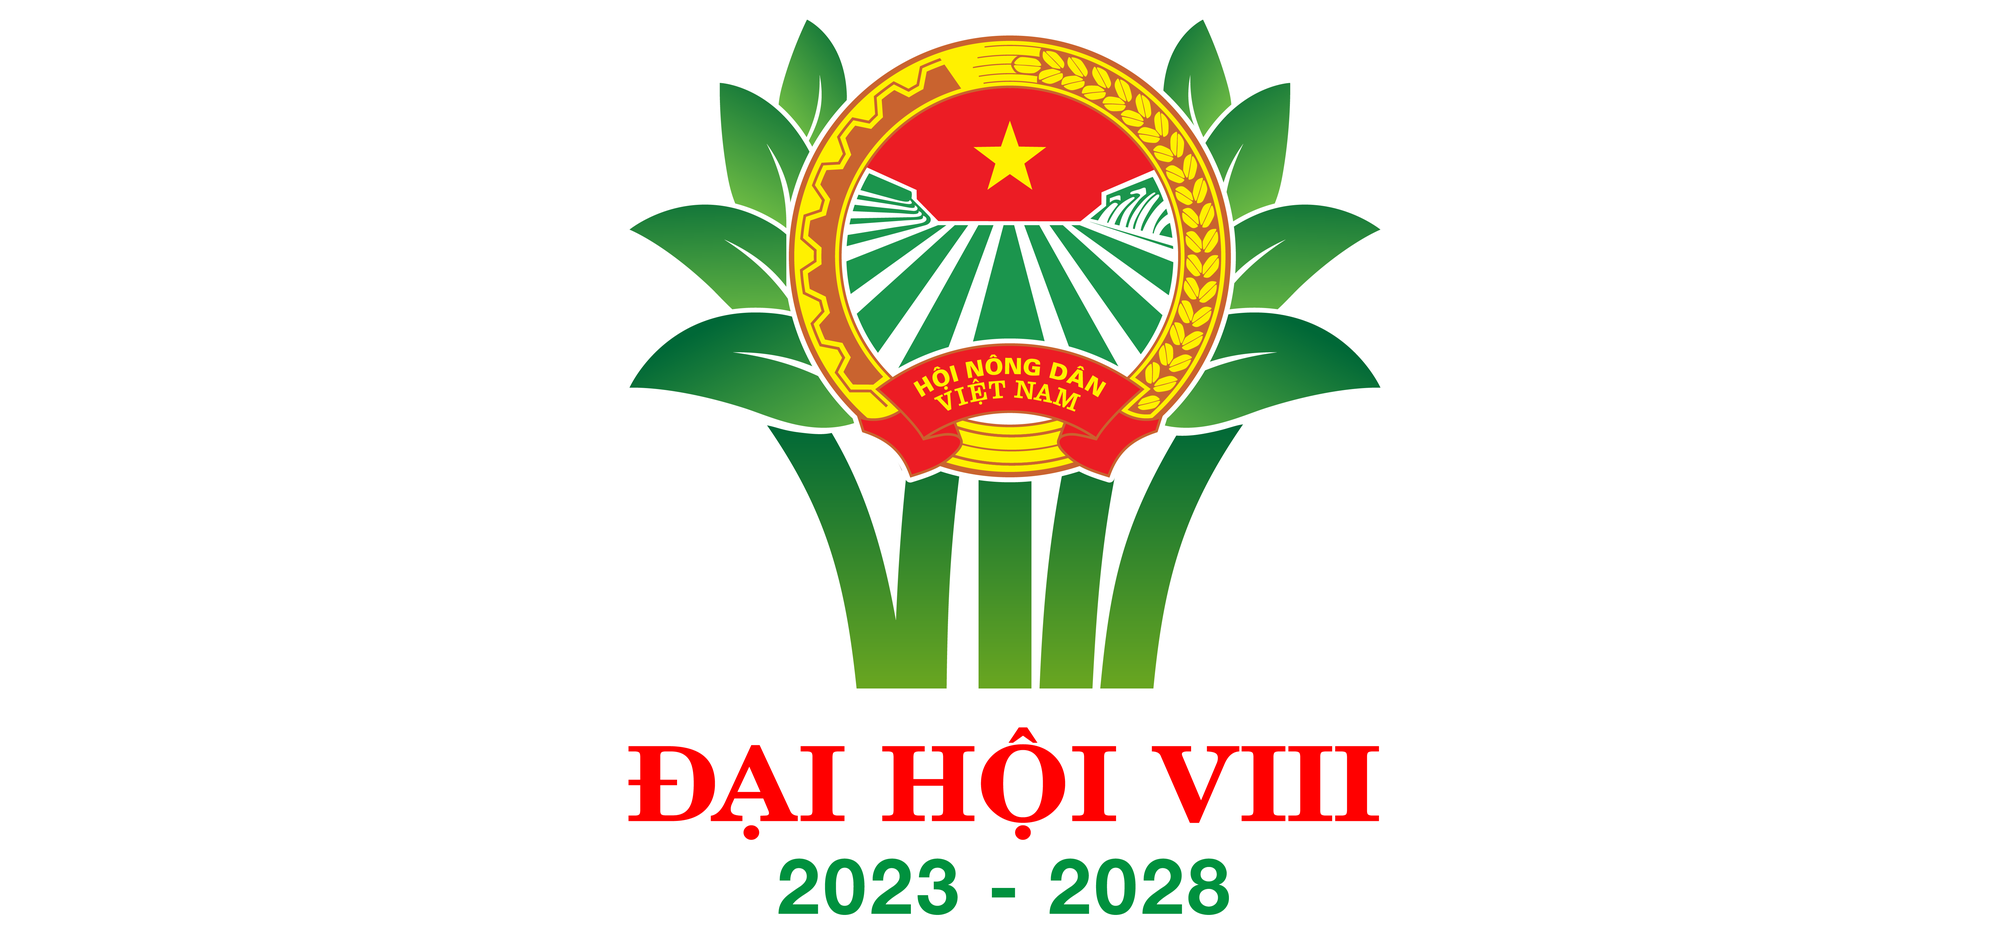 Hướng đến Đại hội VIII Hội Nông dân Việt Nam: Bám sát cơ sở, xây dựng tổ chức Hội vững mạnh, toàn diện (Bài 1) - Ảnh 1.